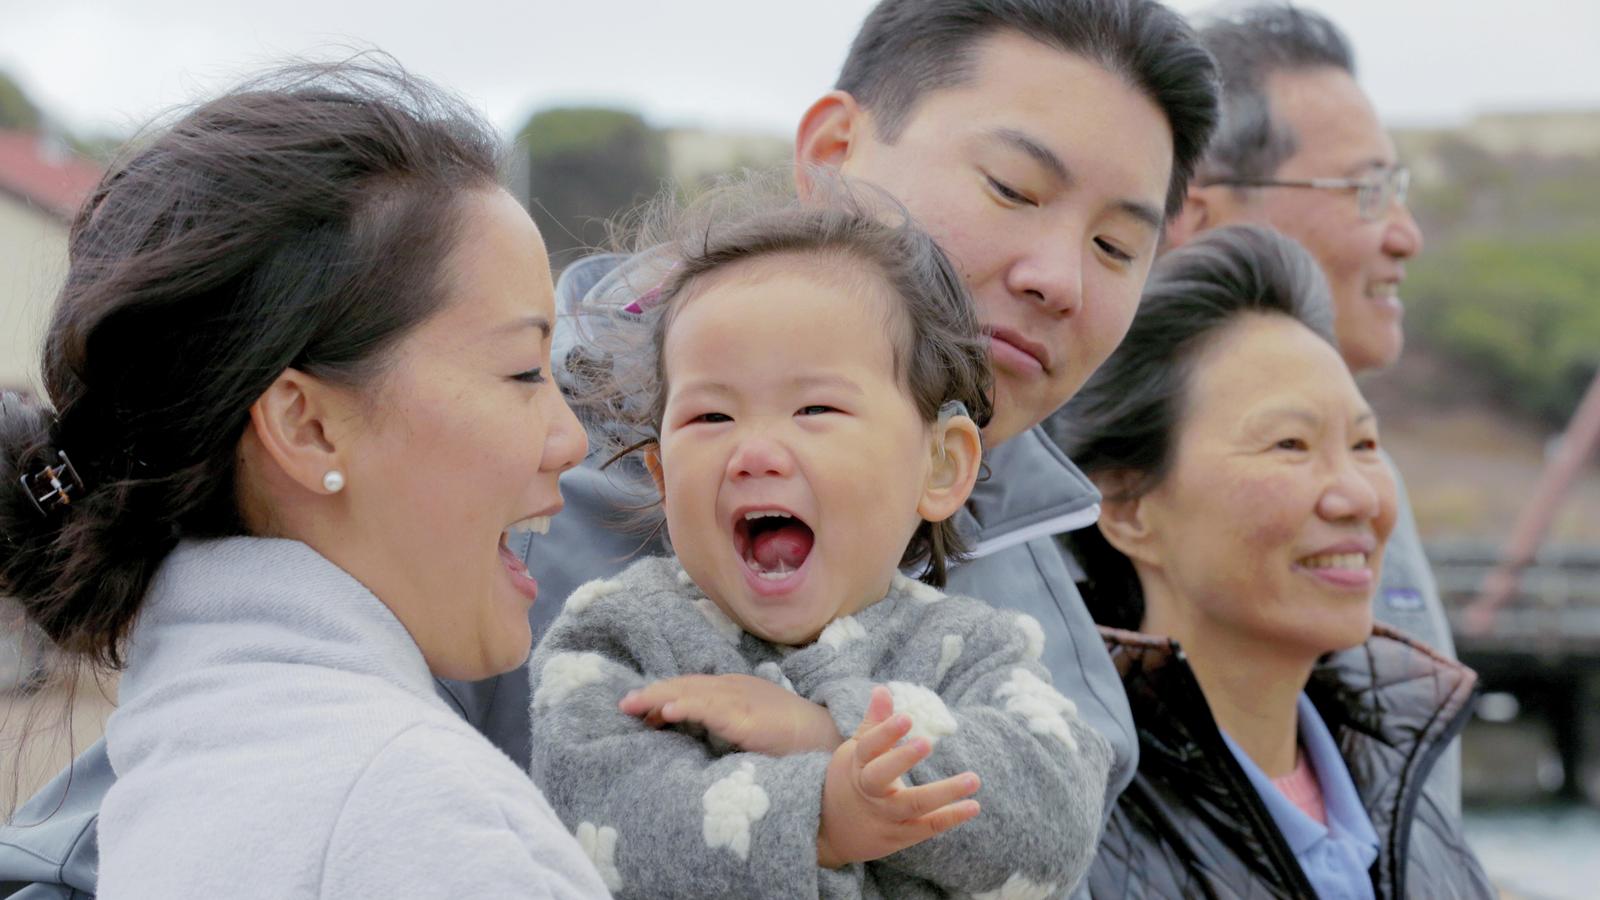 Su-Familie lacht während eines Ausflugs